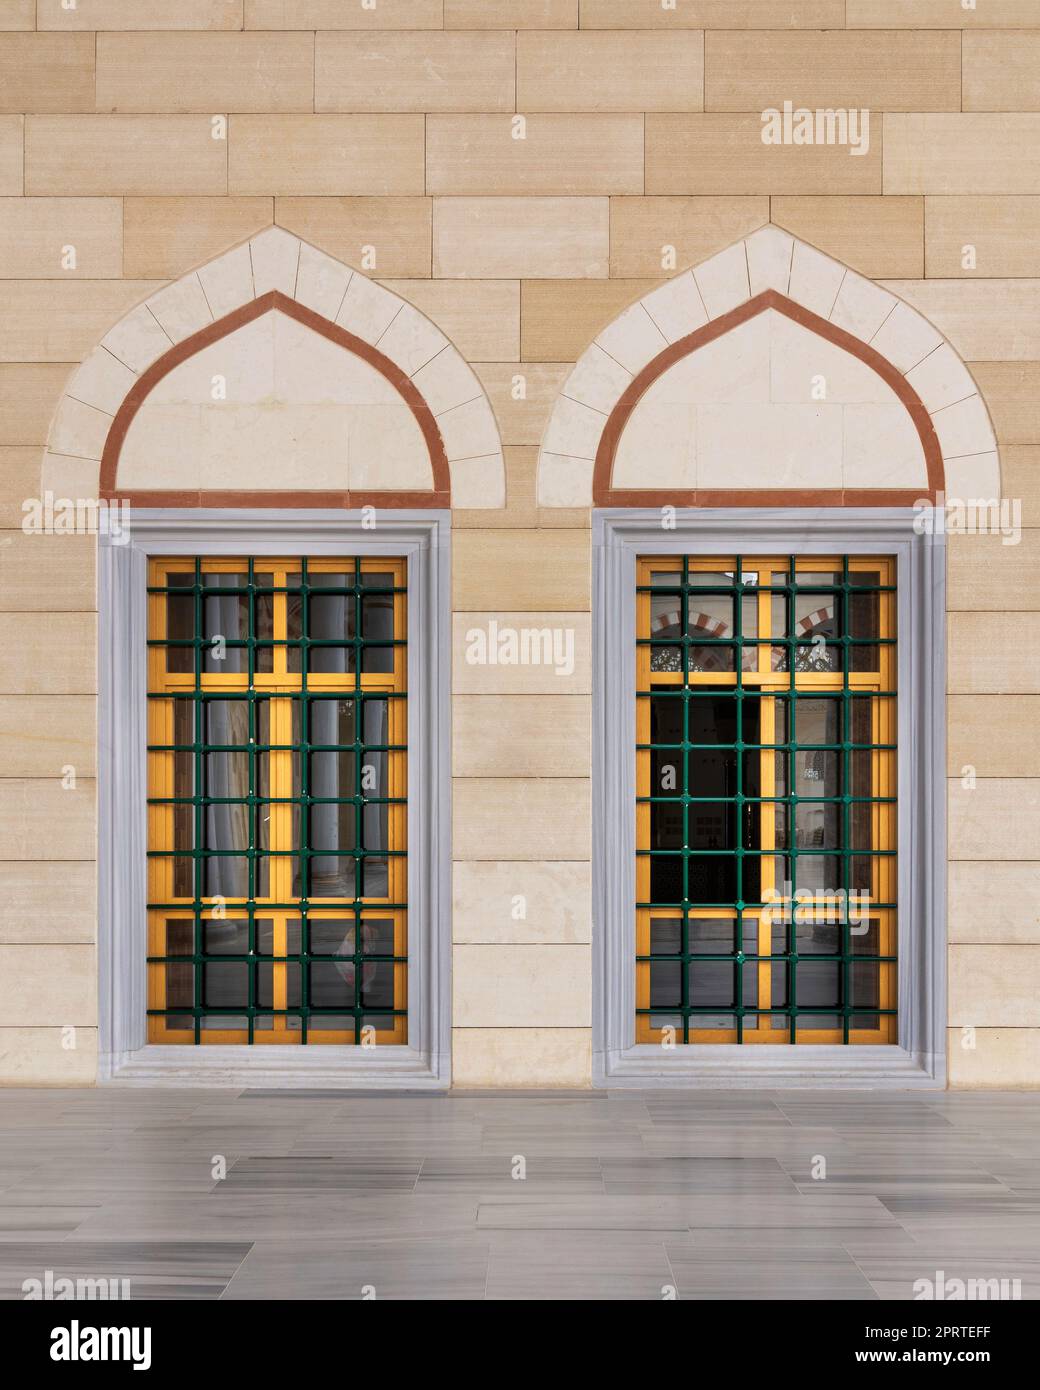 Zwei schmiedeeiserne Bogenfenster mit modernem architektonischem Design im Innenhof der Camlica Moschee, Istanbul, Türkei Stockfoto